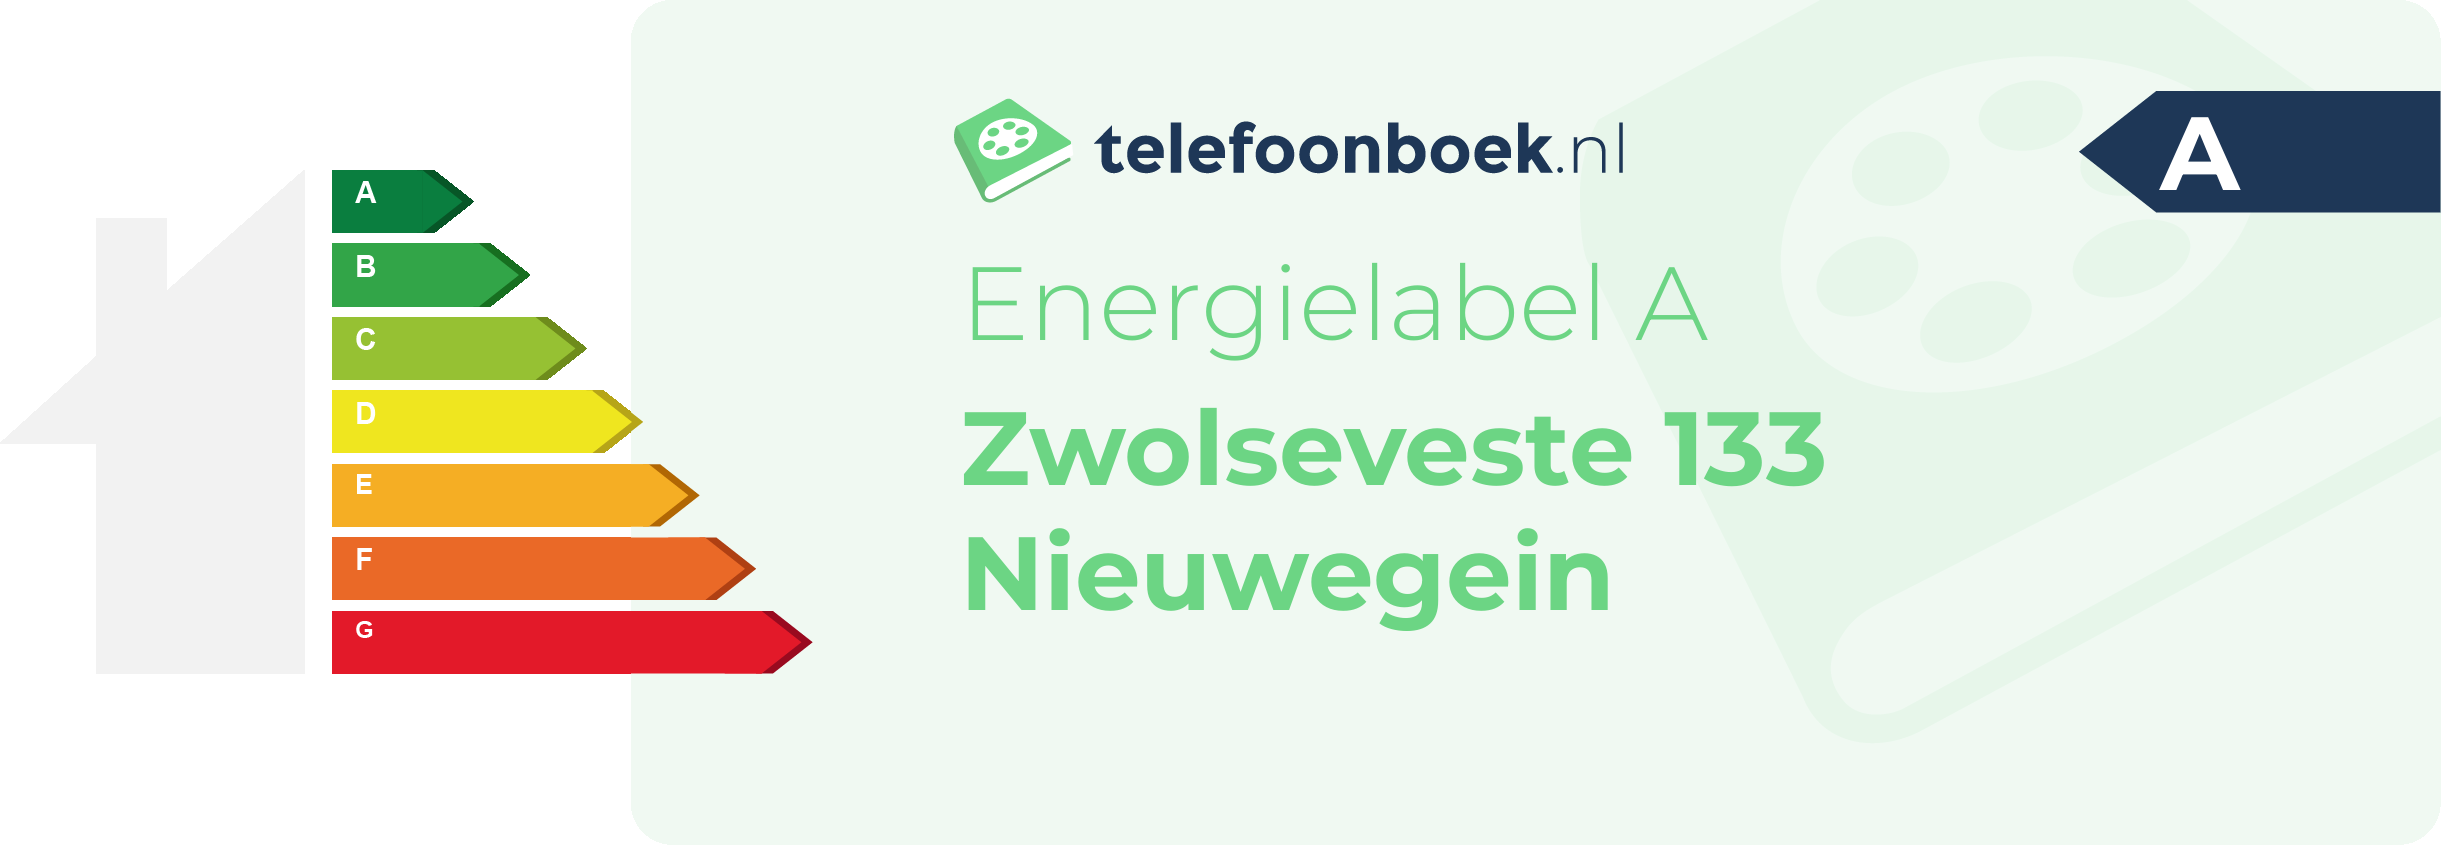 Energielabel Zwolseveste 133 Nieuwegein